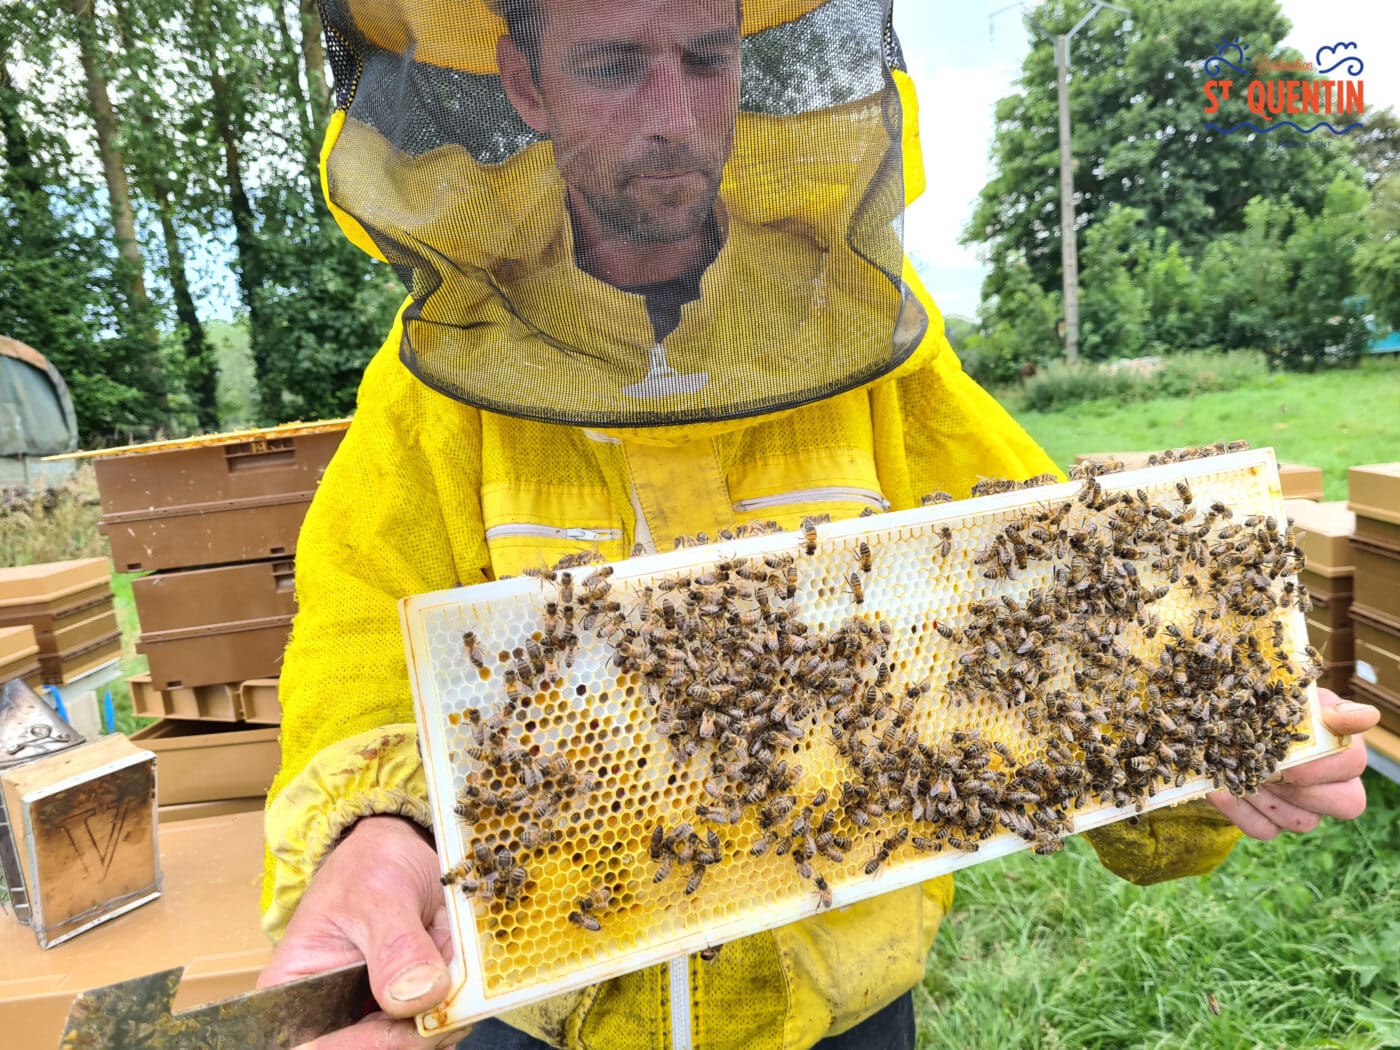 ambassadeur les abeilles de francilly 04 - Office de tourisme du Saint-Quentinois